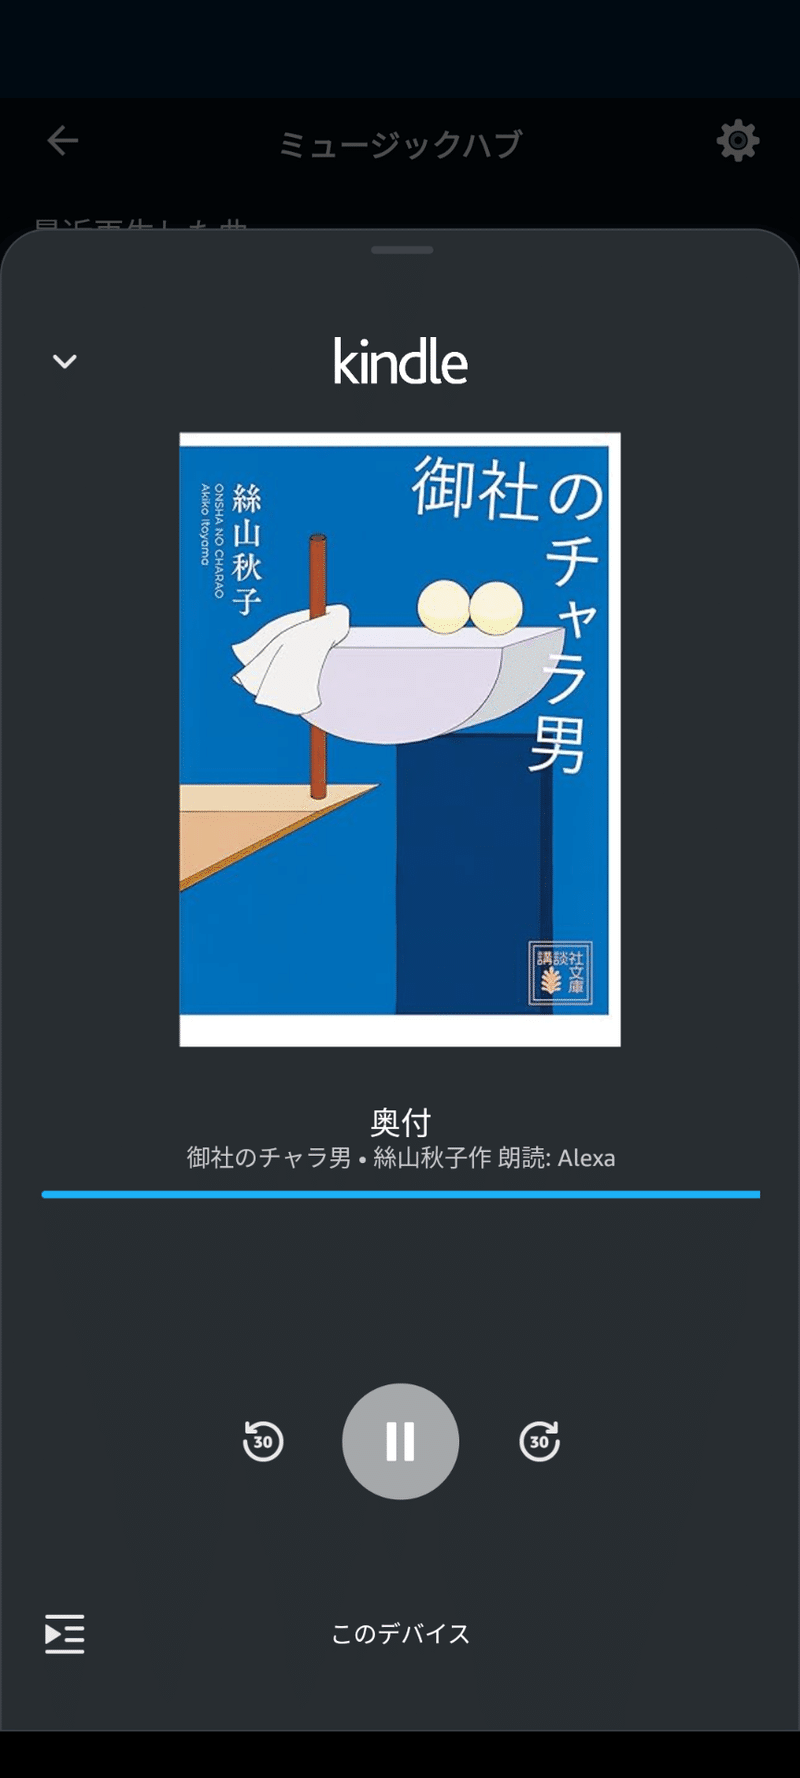 AlexaでのKindle本の再生画面のスクリーンショット。絲山秋子『御社のチャラ男』を再生している。